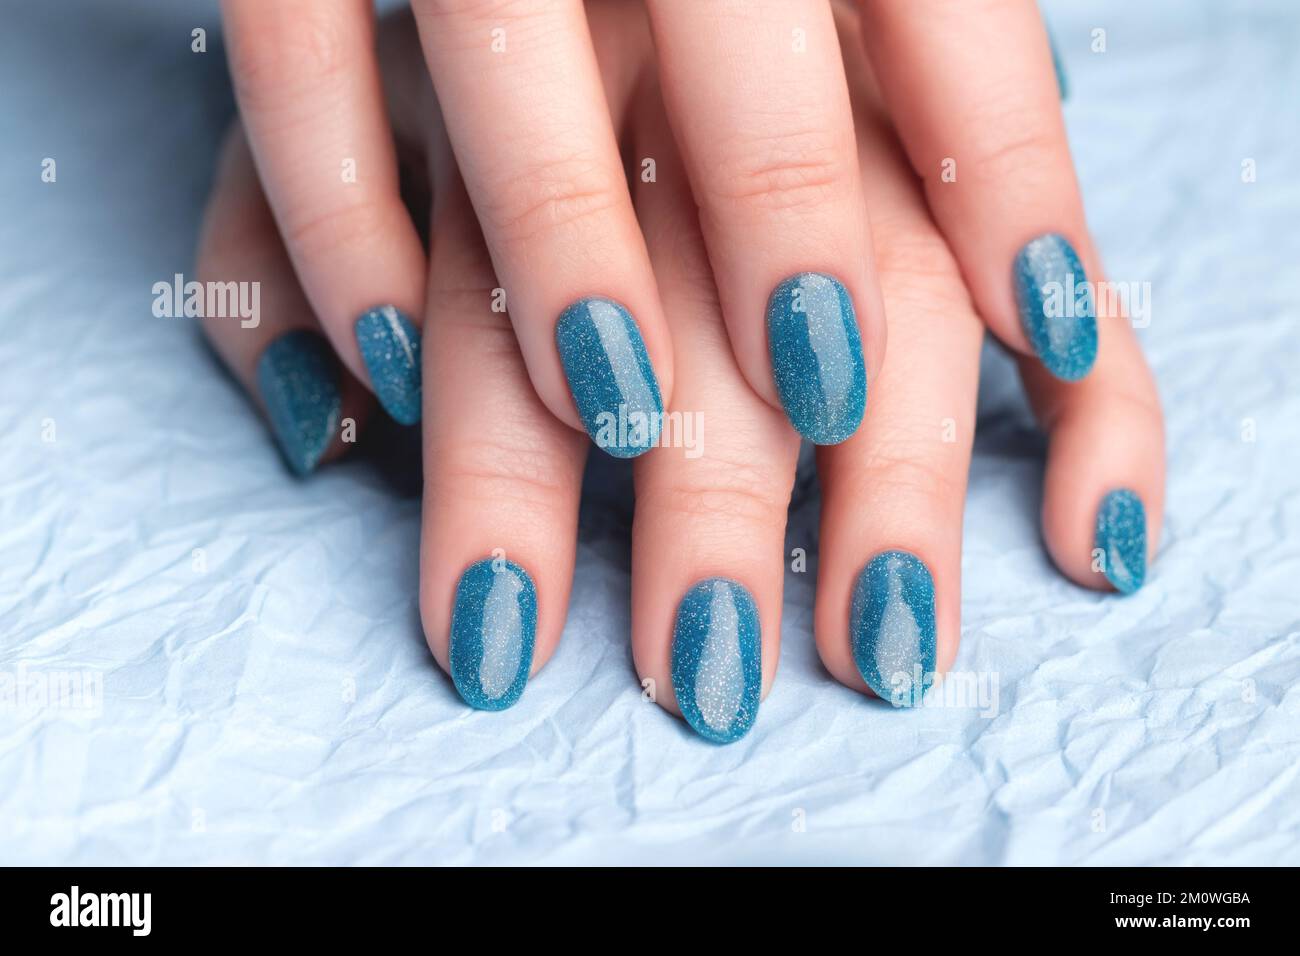 Mains de femmes avec une belle manucure - ongles bleus scintillants sur papier bleu froissé. Concept de soin des ongles Banque D'Images